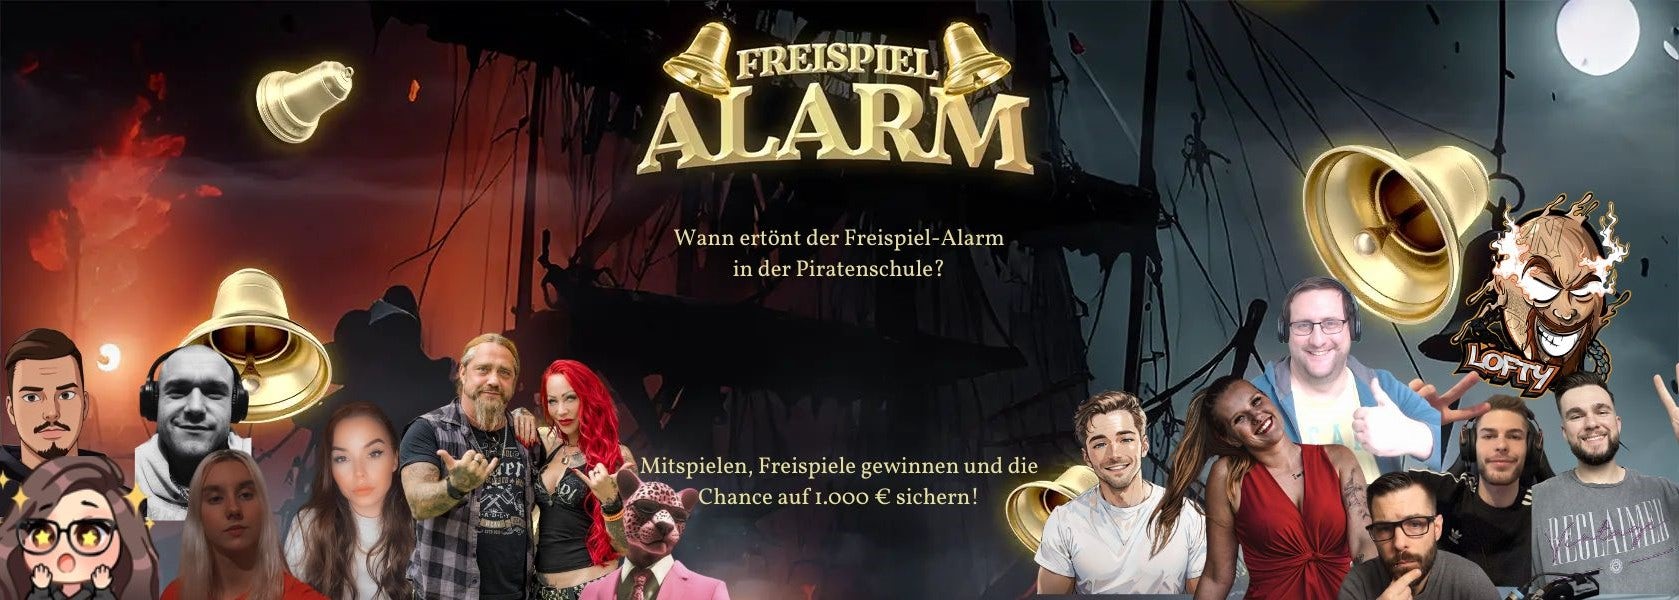 freispiel-alarm-piratenschule